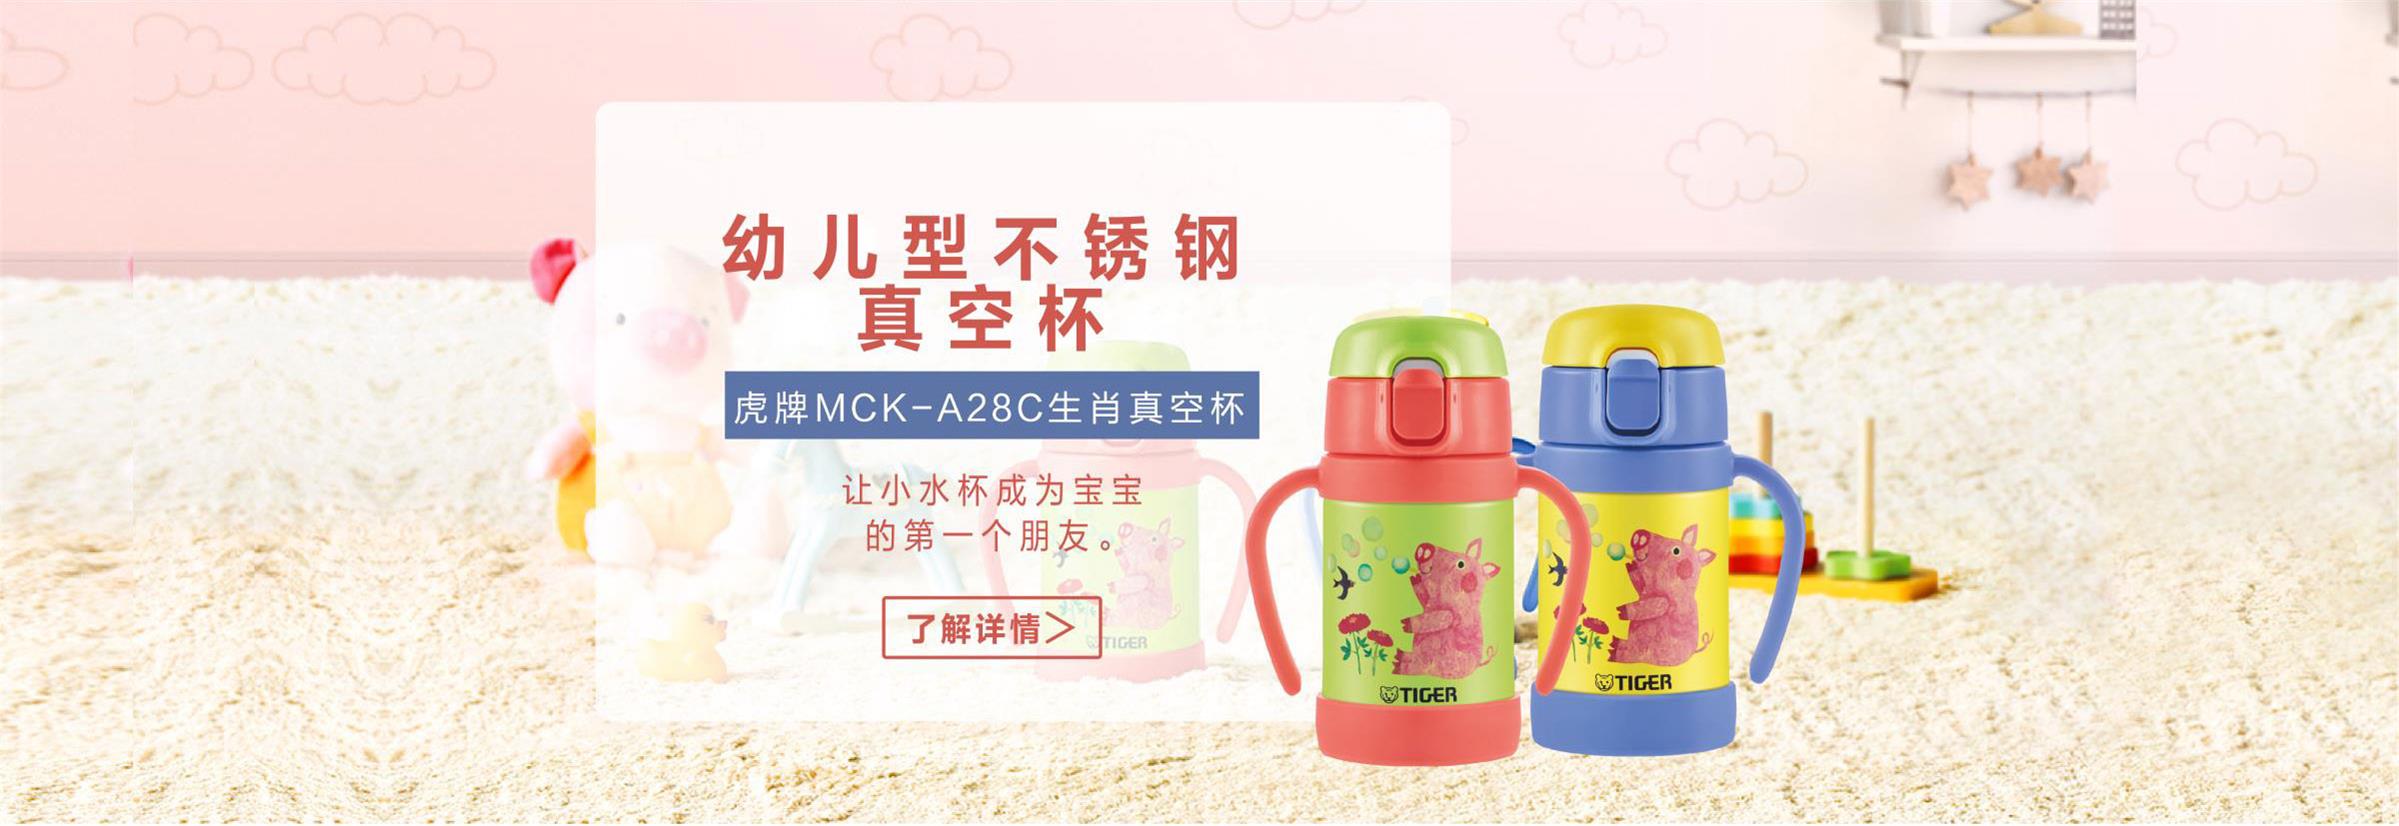 MCK-A28C生肖真空杯